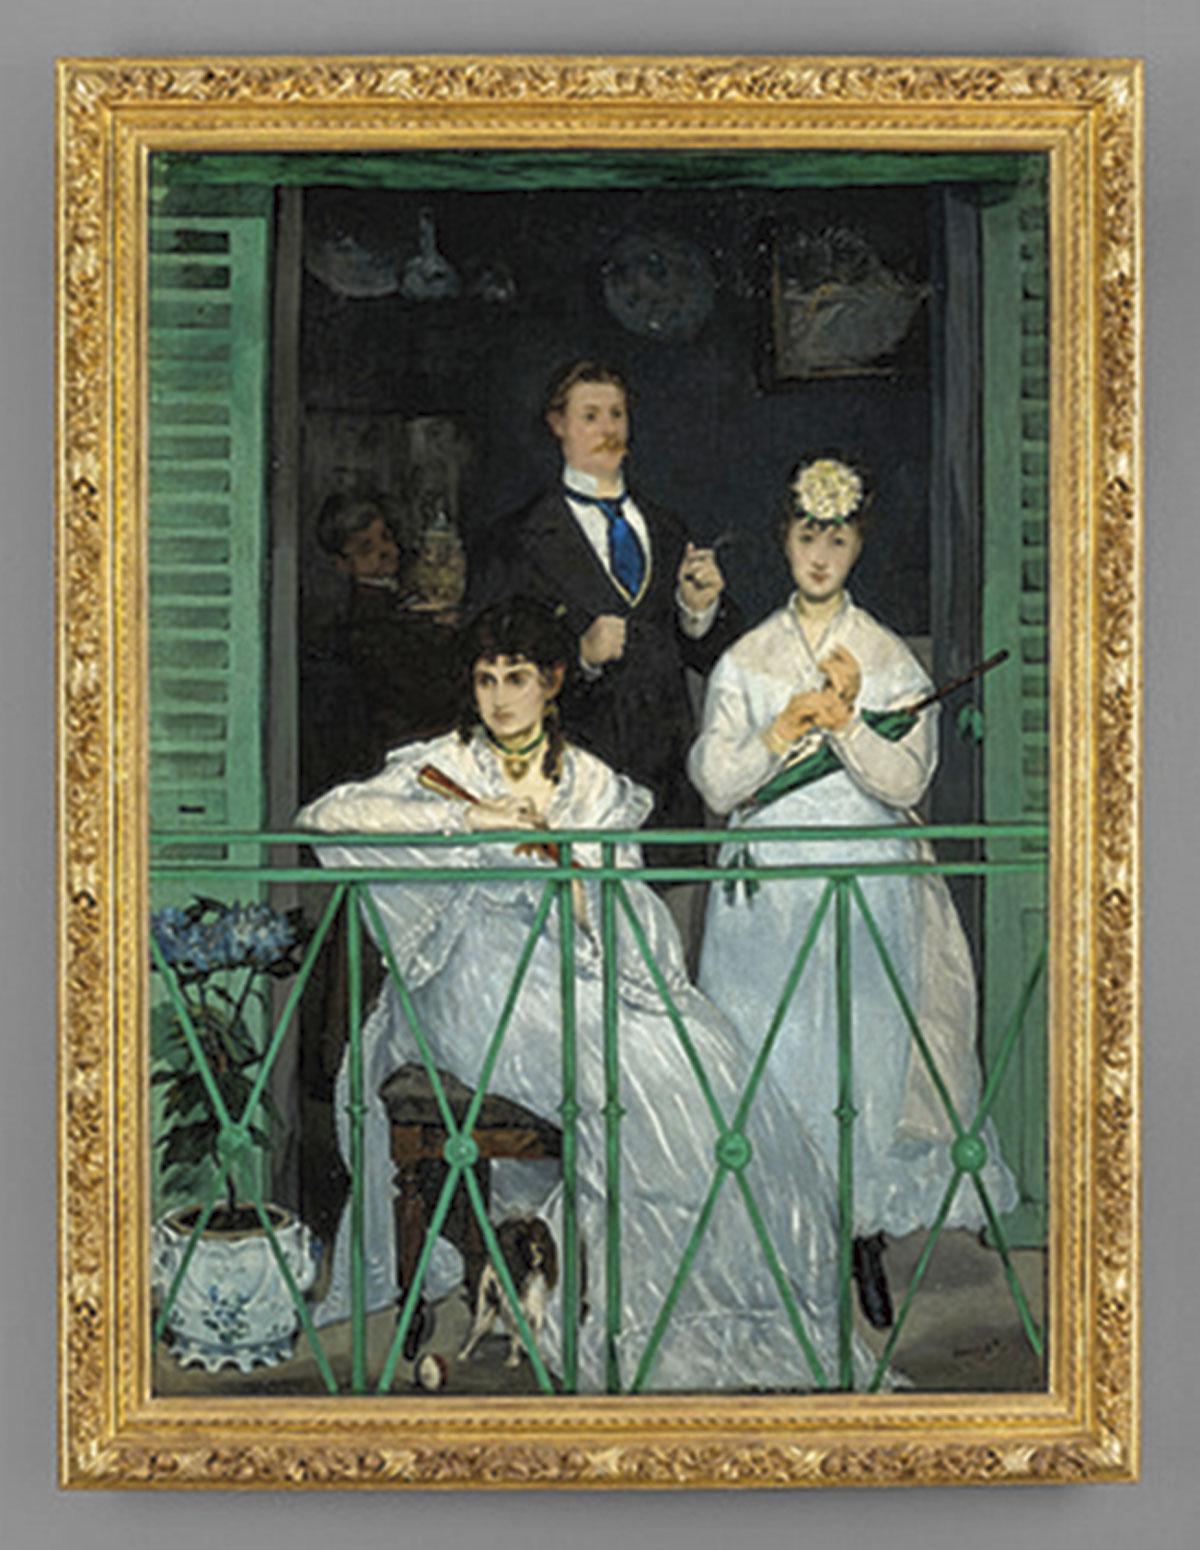 Le Balcon, Edouard Manet, 1868-1869